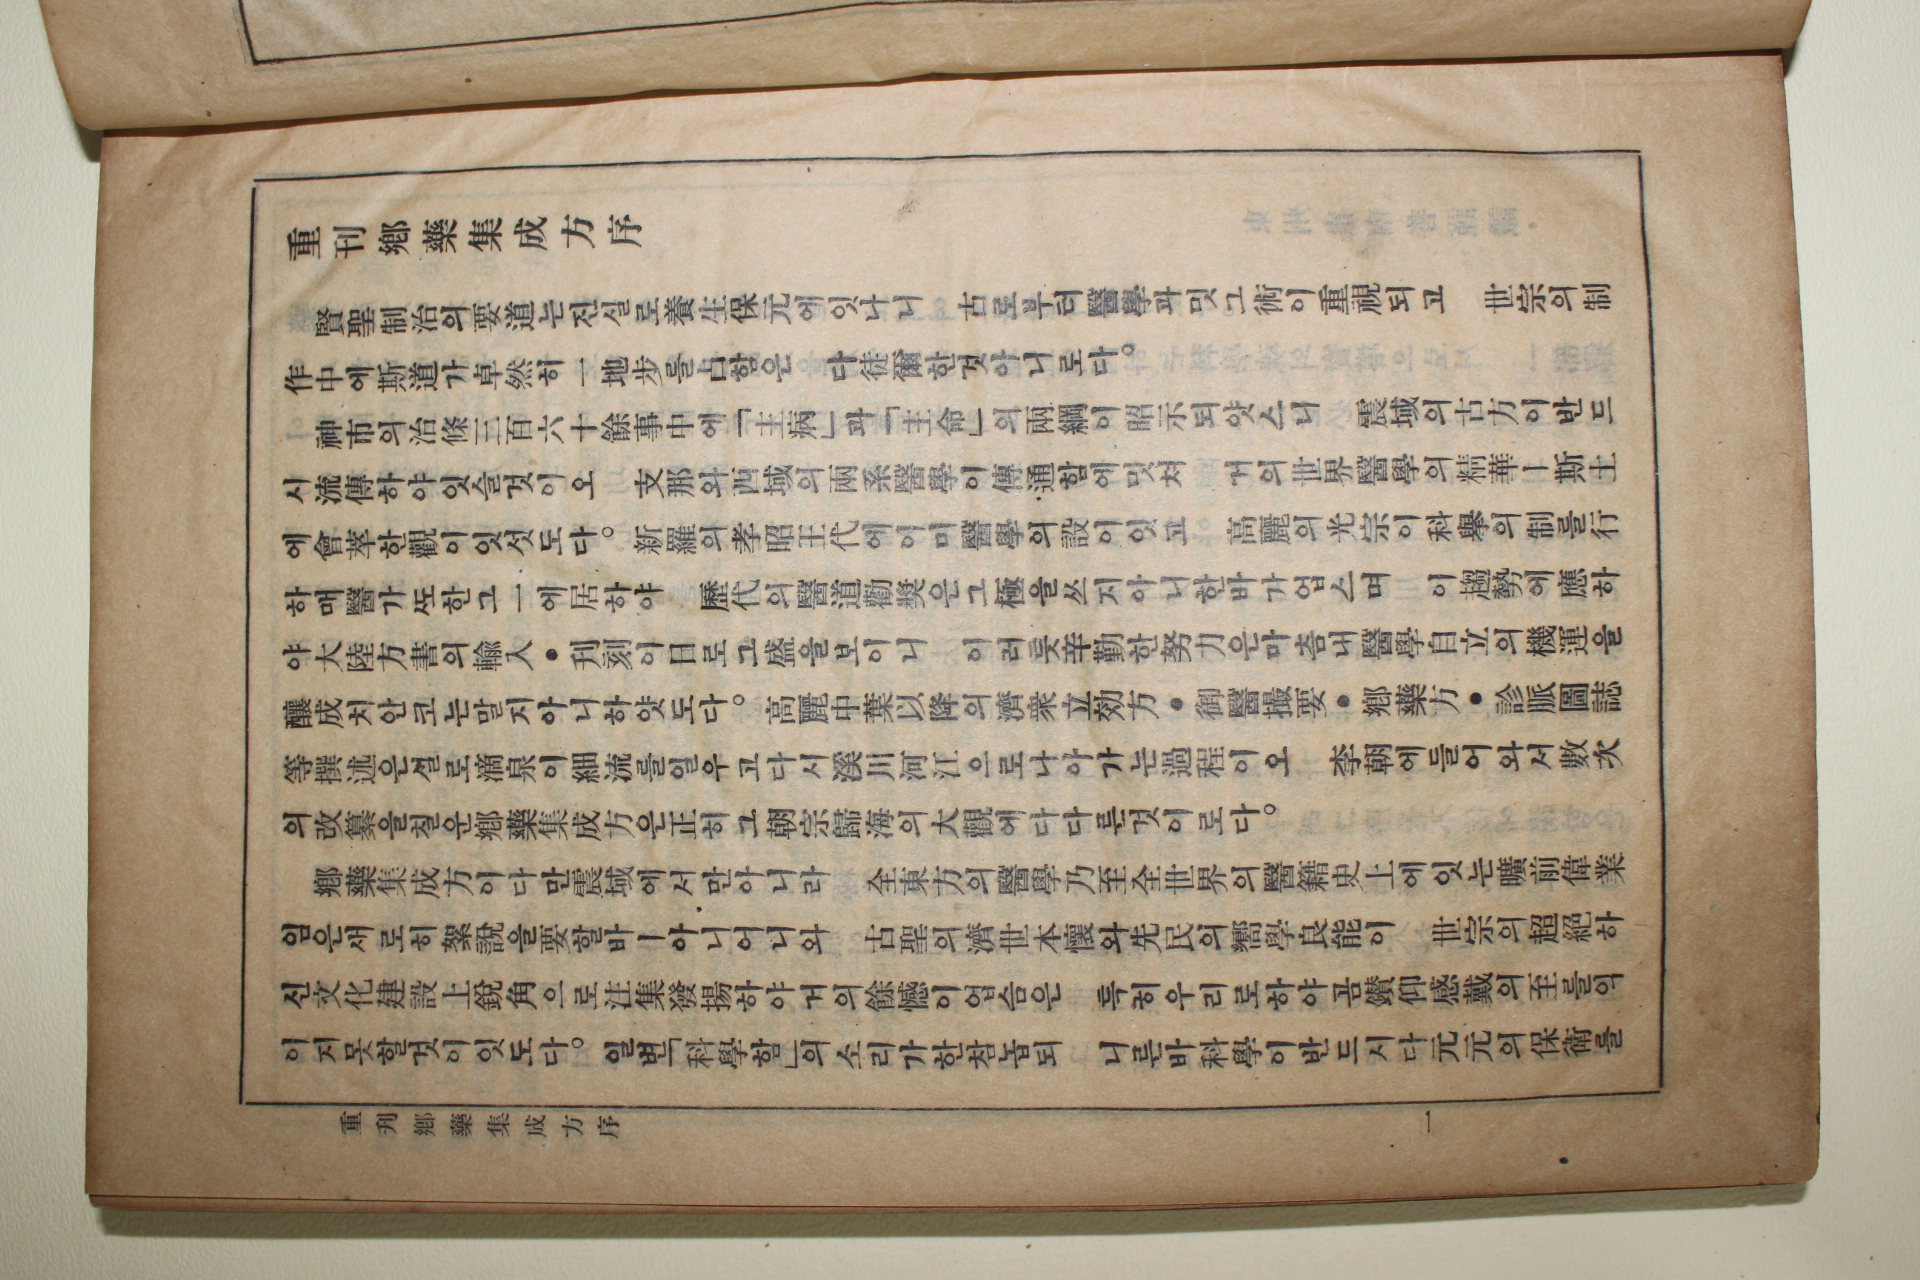 1942년(소화17년) 경성행림서원간행 의서 향약집성방(鄕藥集成方) 3책완질